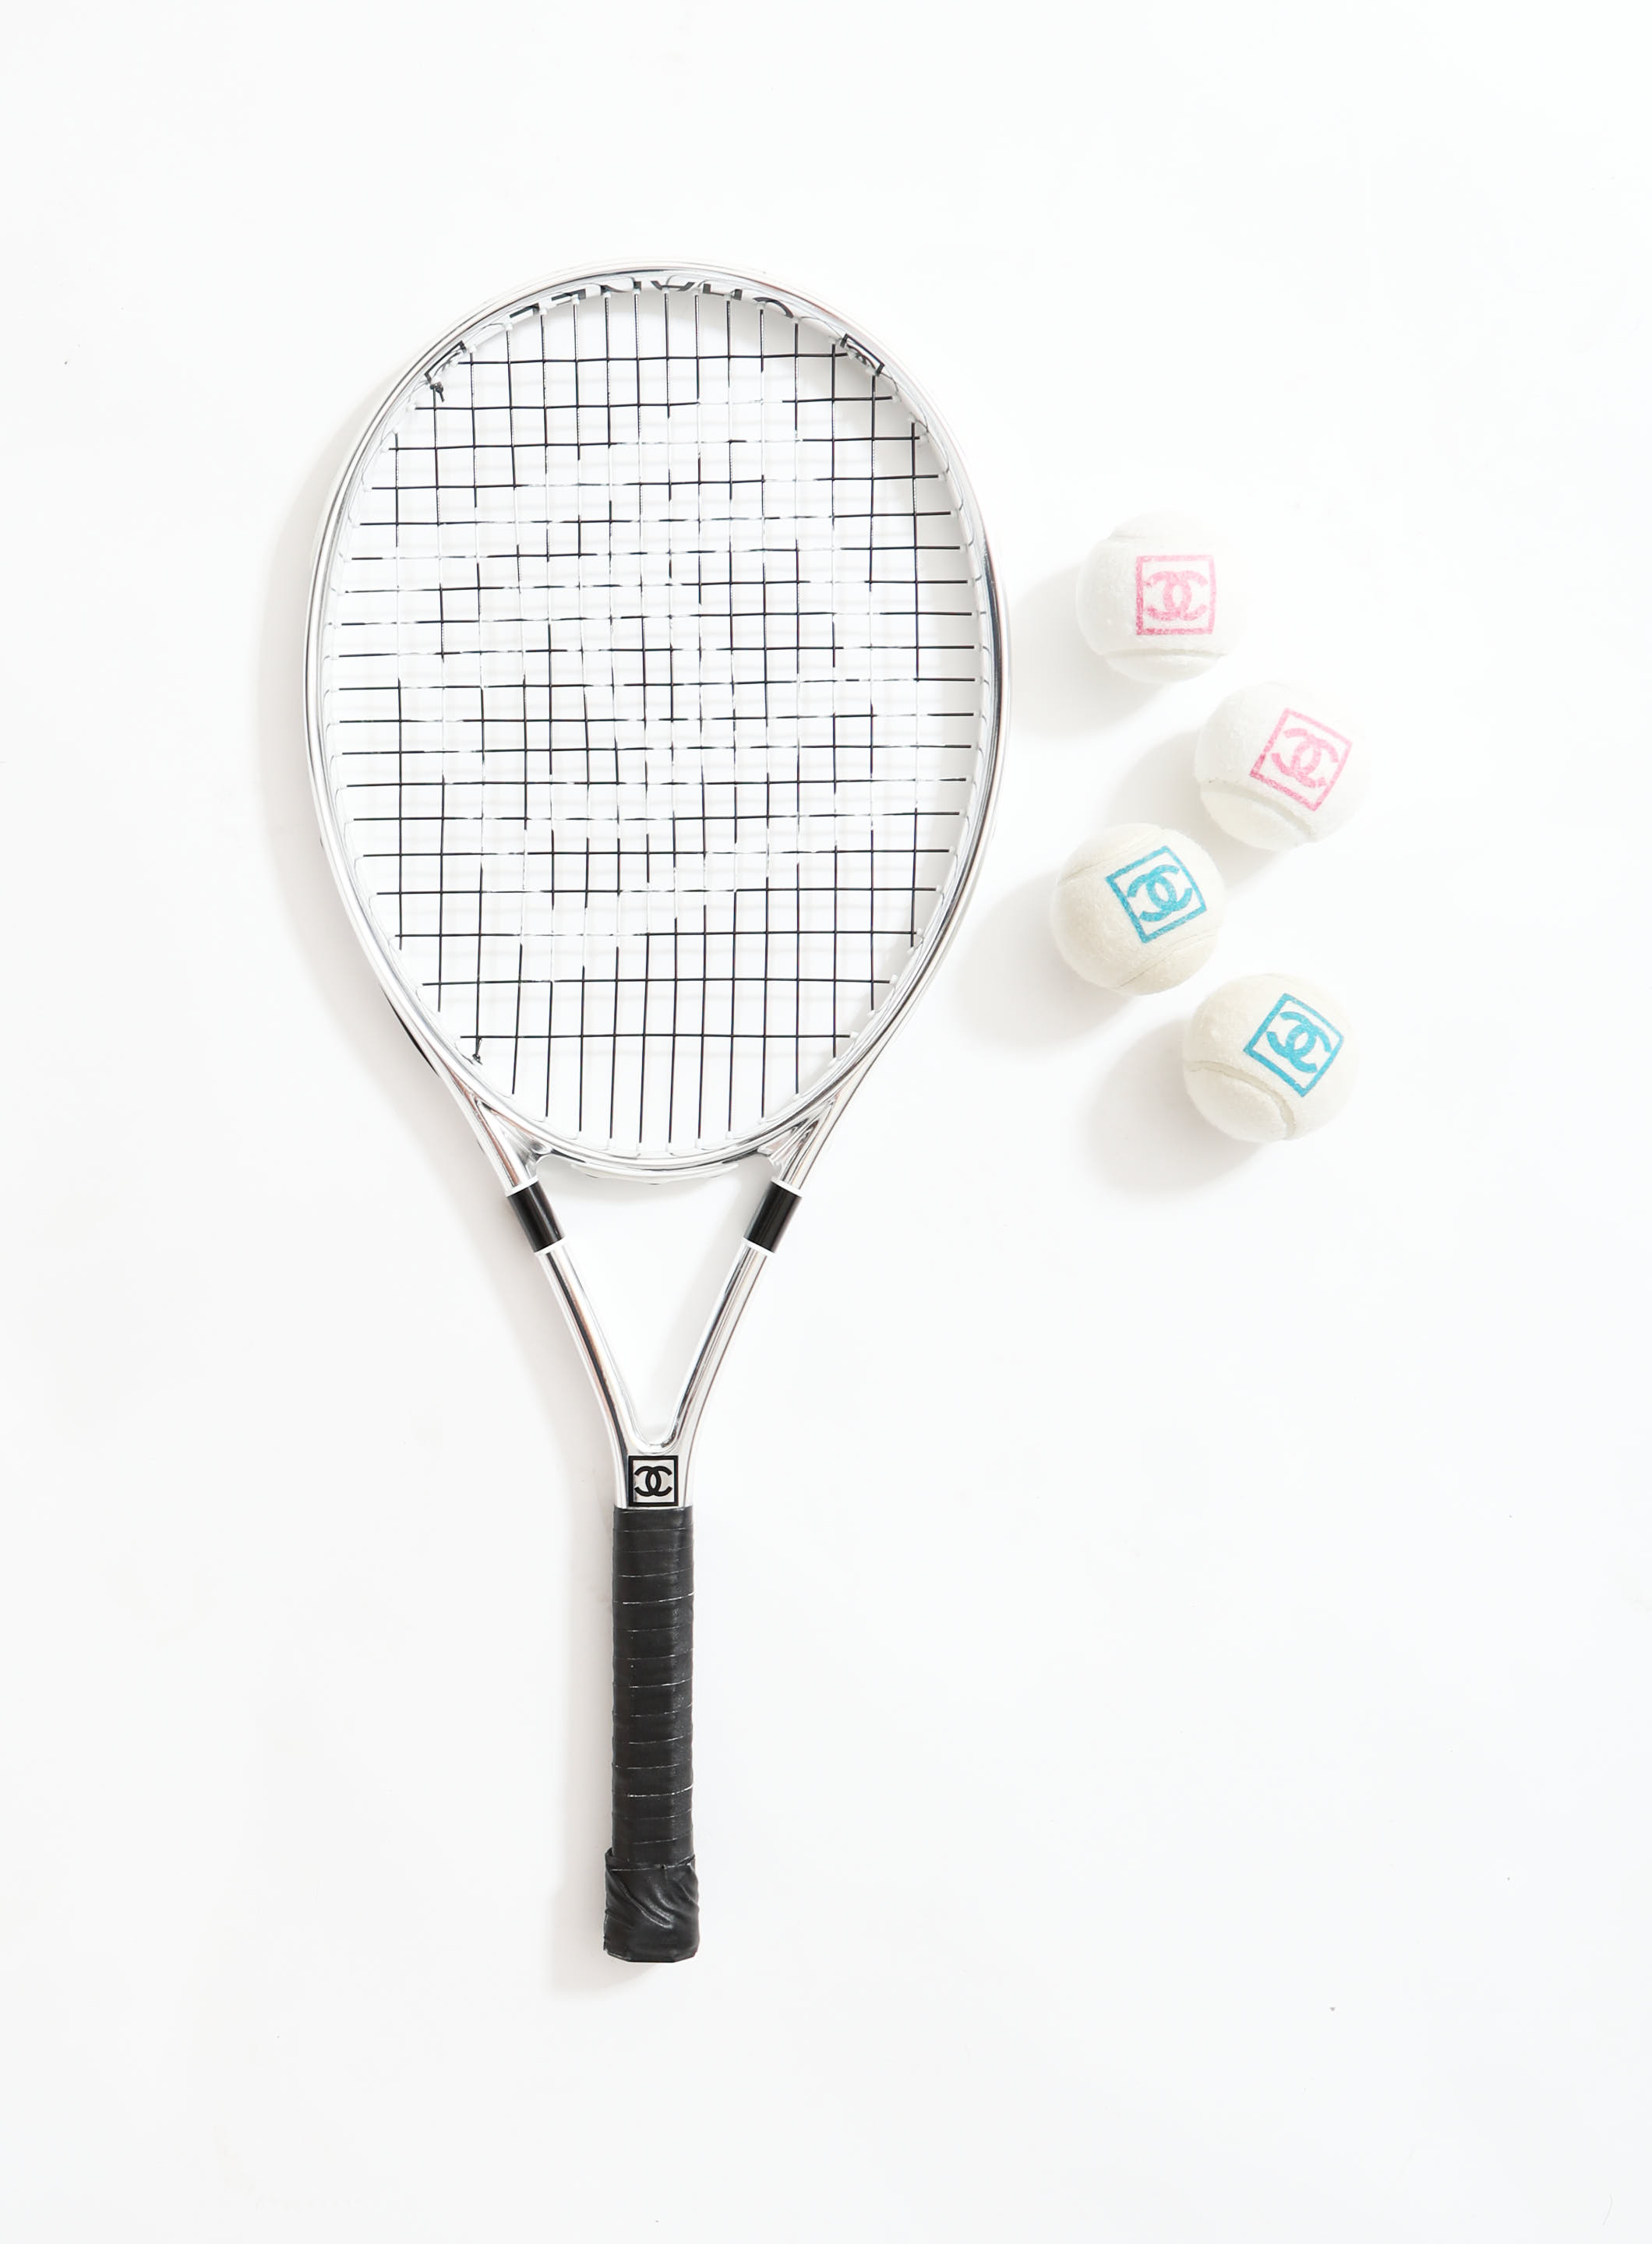 S/S 2008 'CC' Tennis Racket & Ball Set, Authentic & Vintage